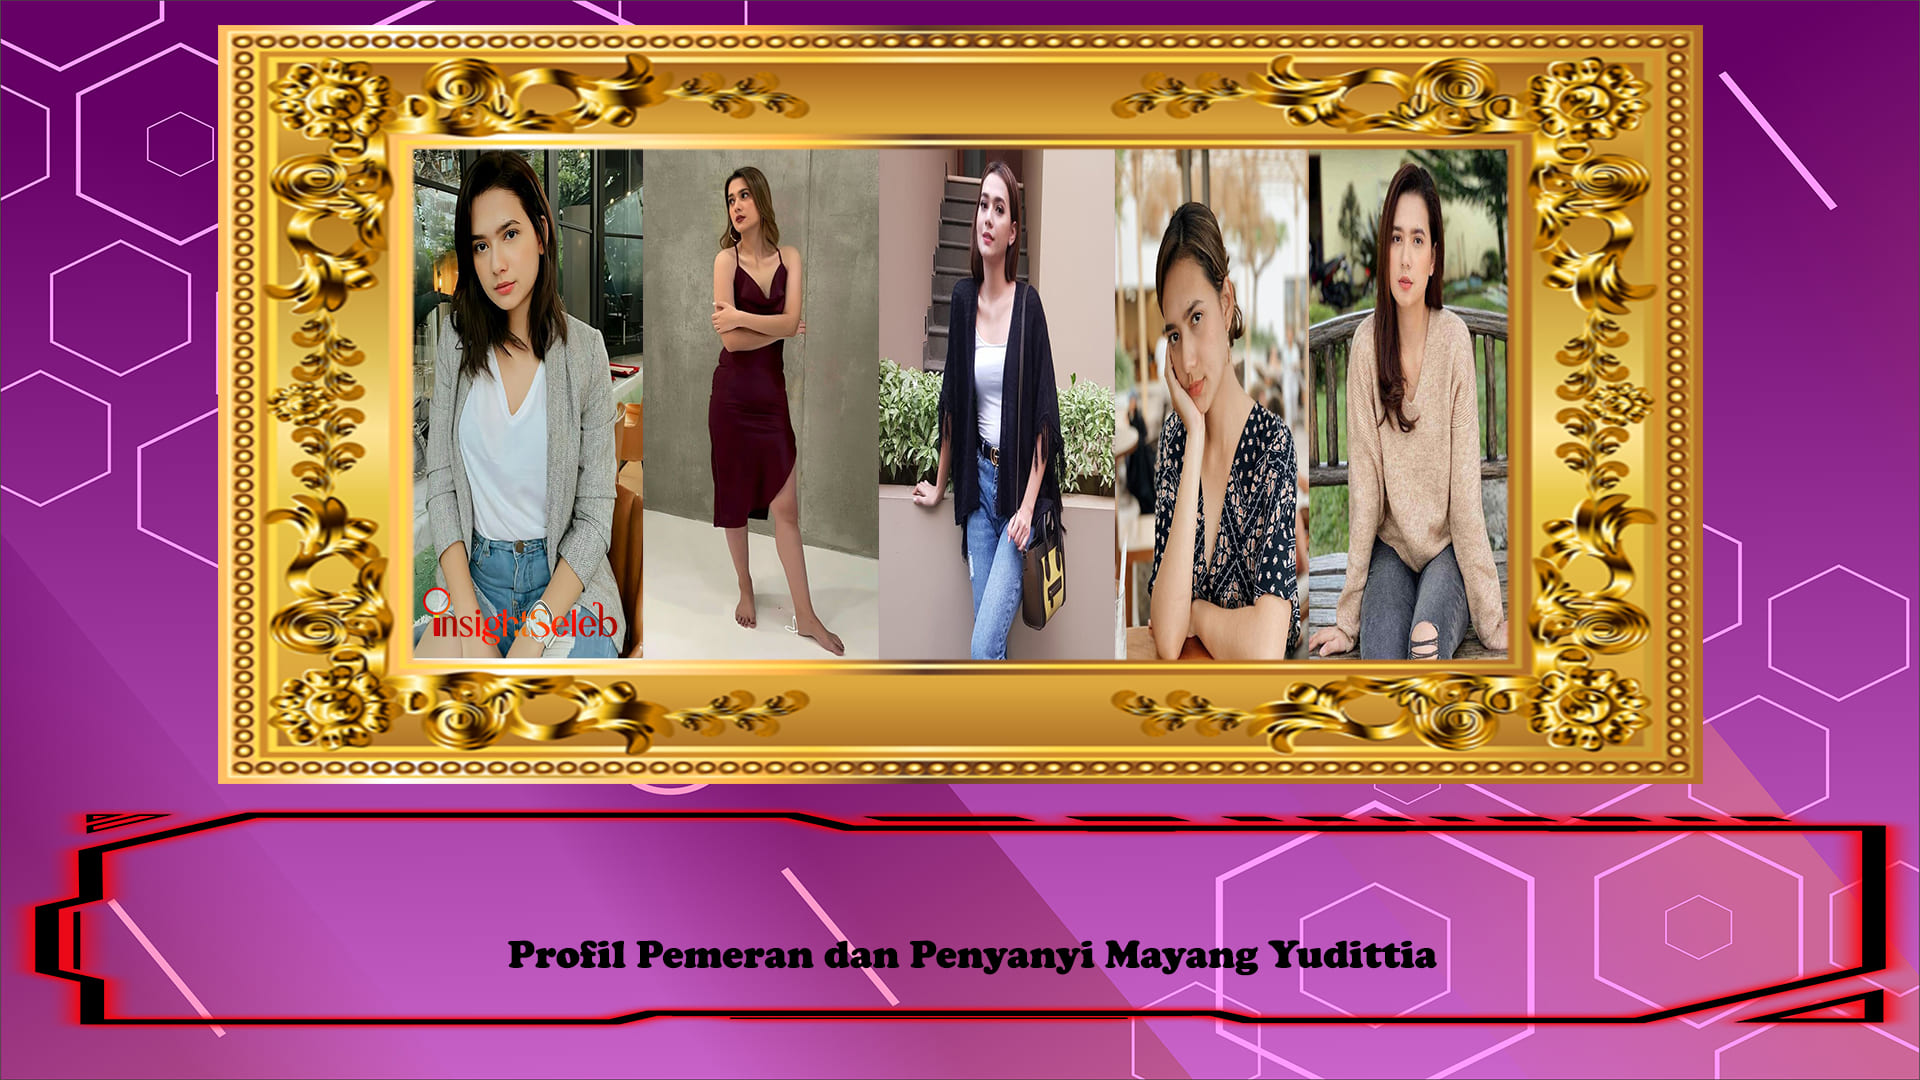 Profil Pemeran dan Penyanyi Mayang Yudittia